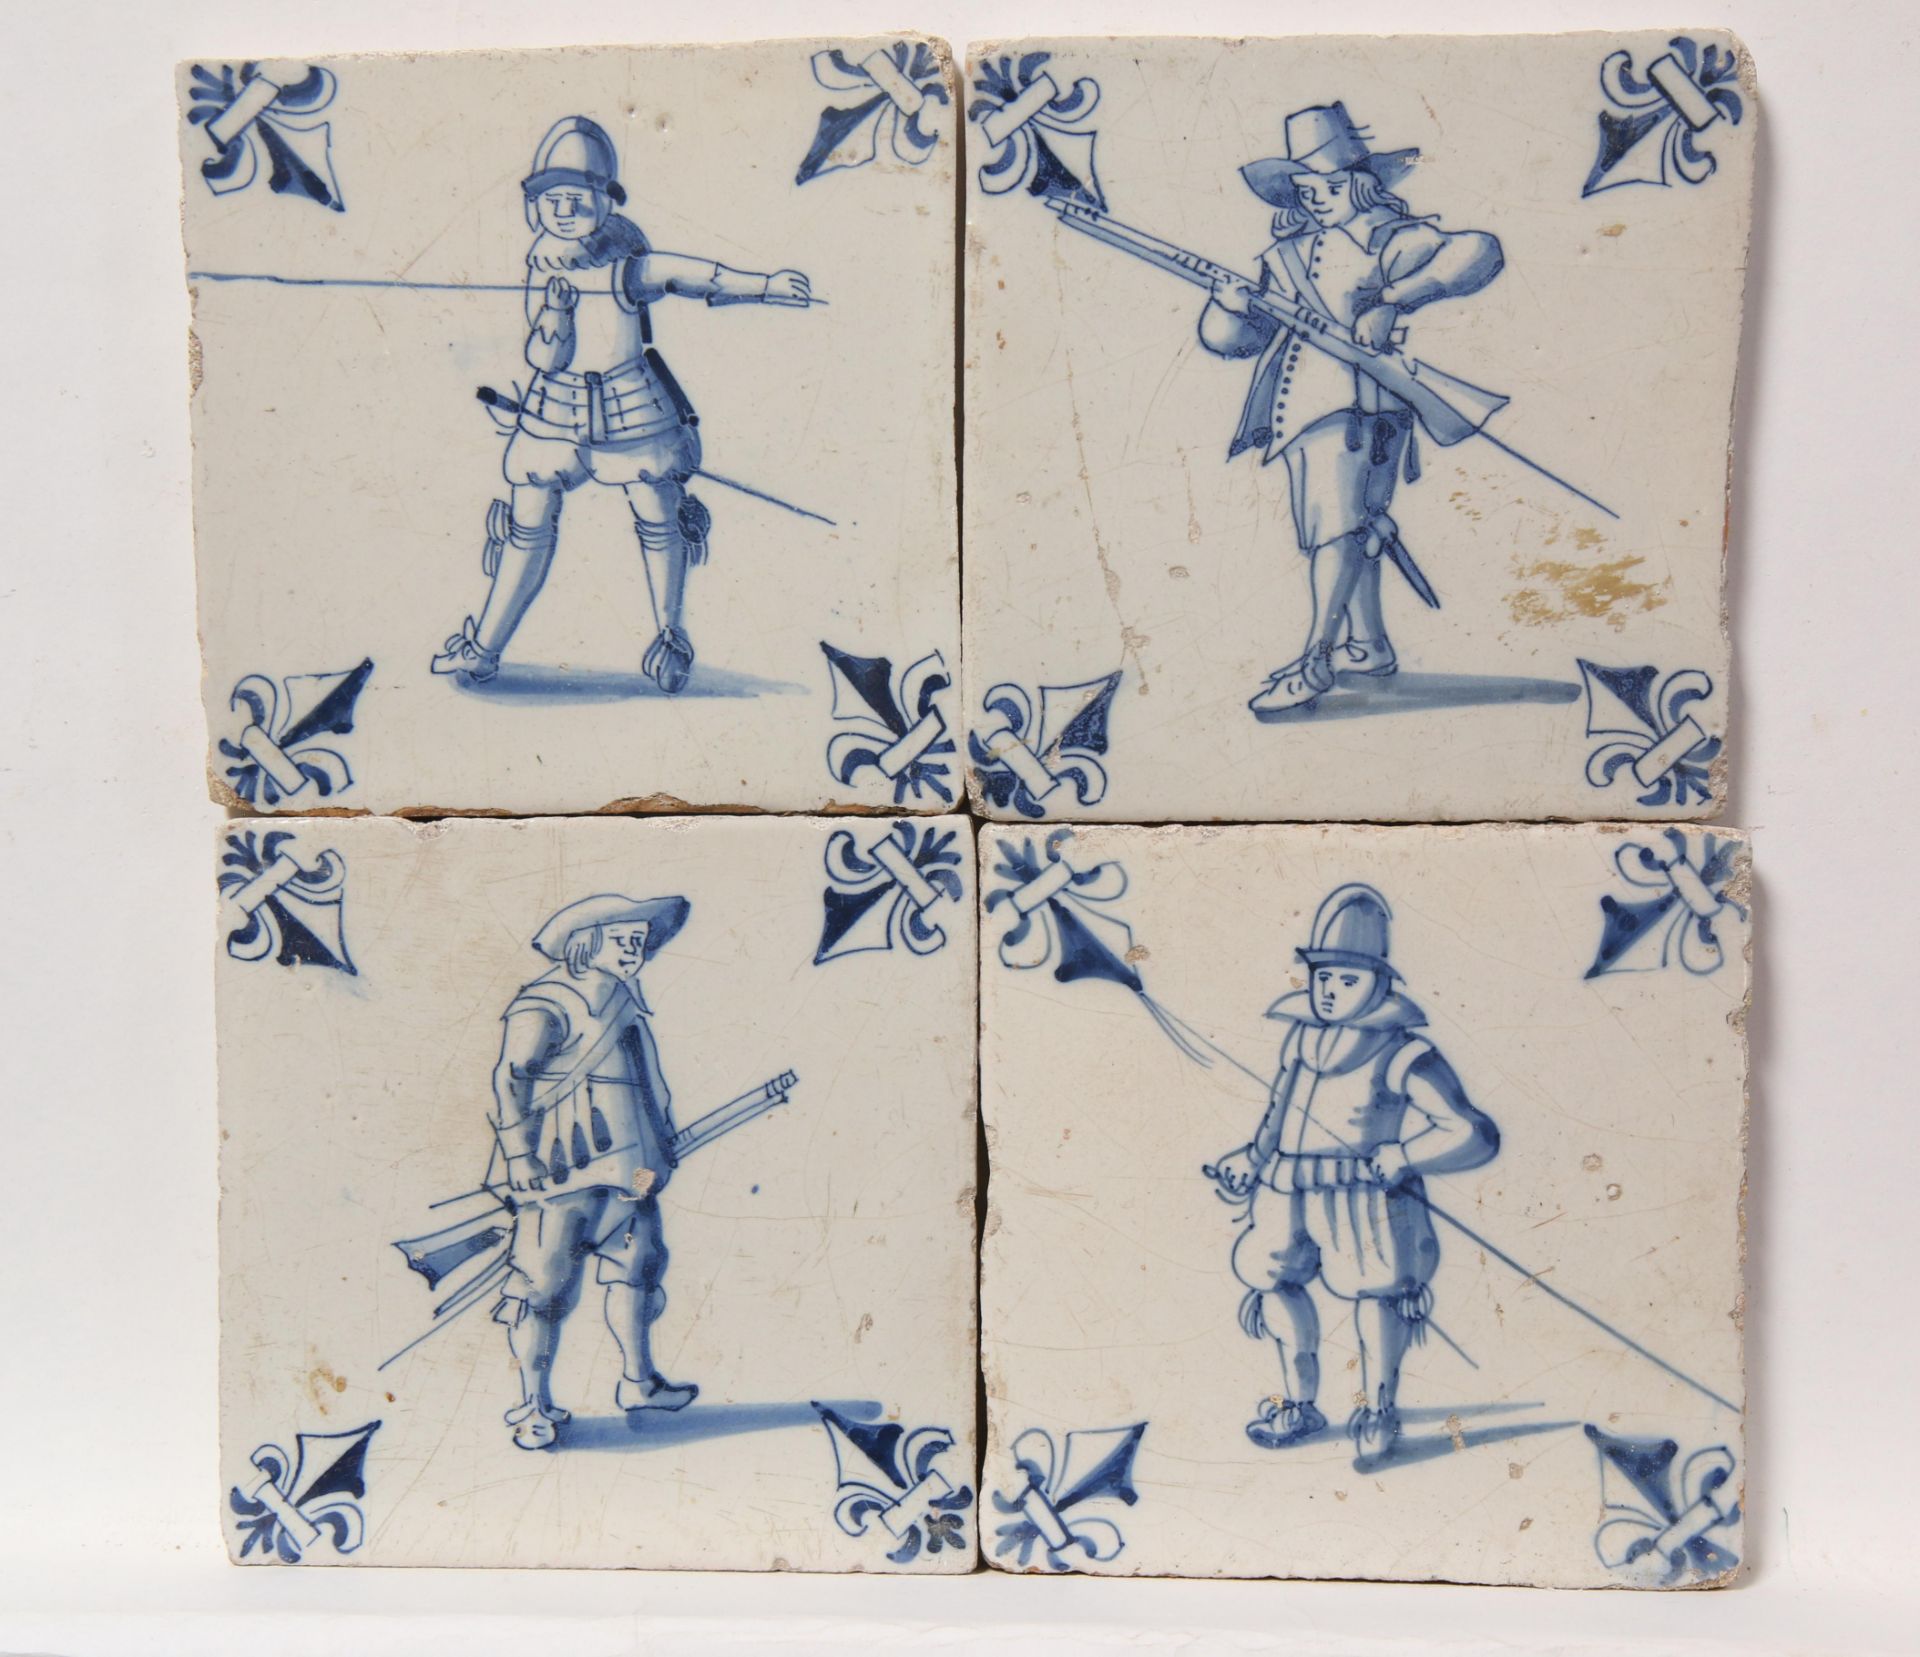 Vier blauw aardewerk figuurdecor tegels, ca. 1620 - 1650.